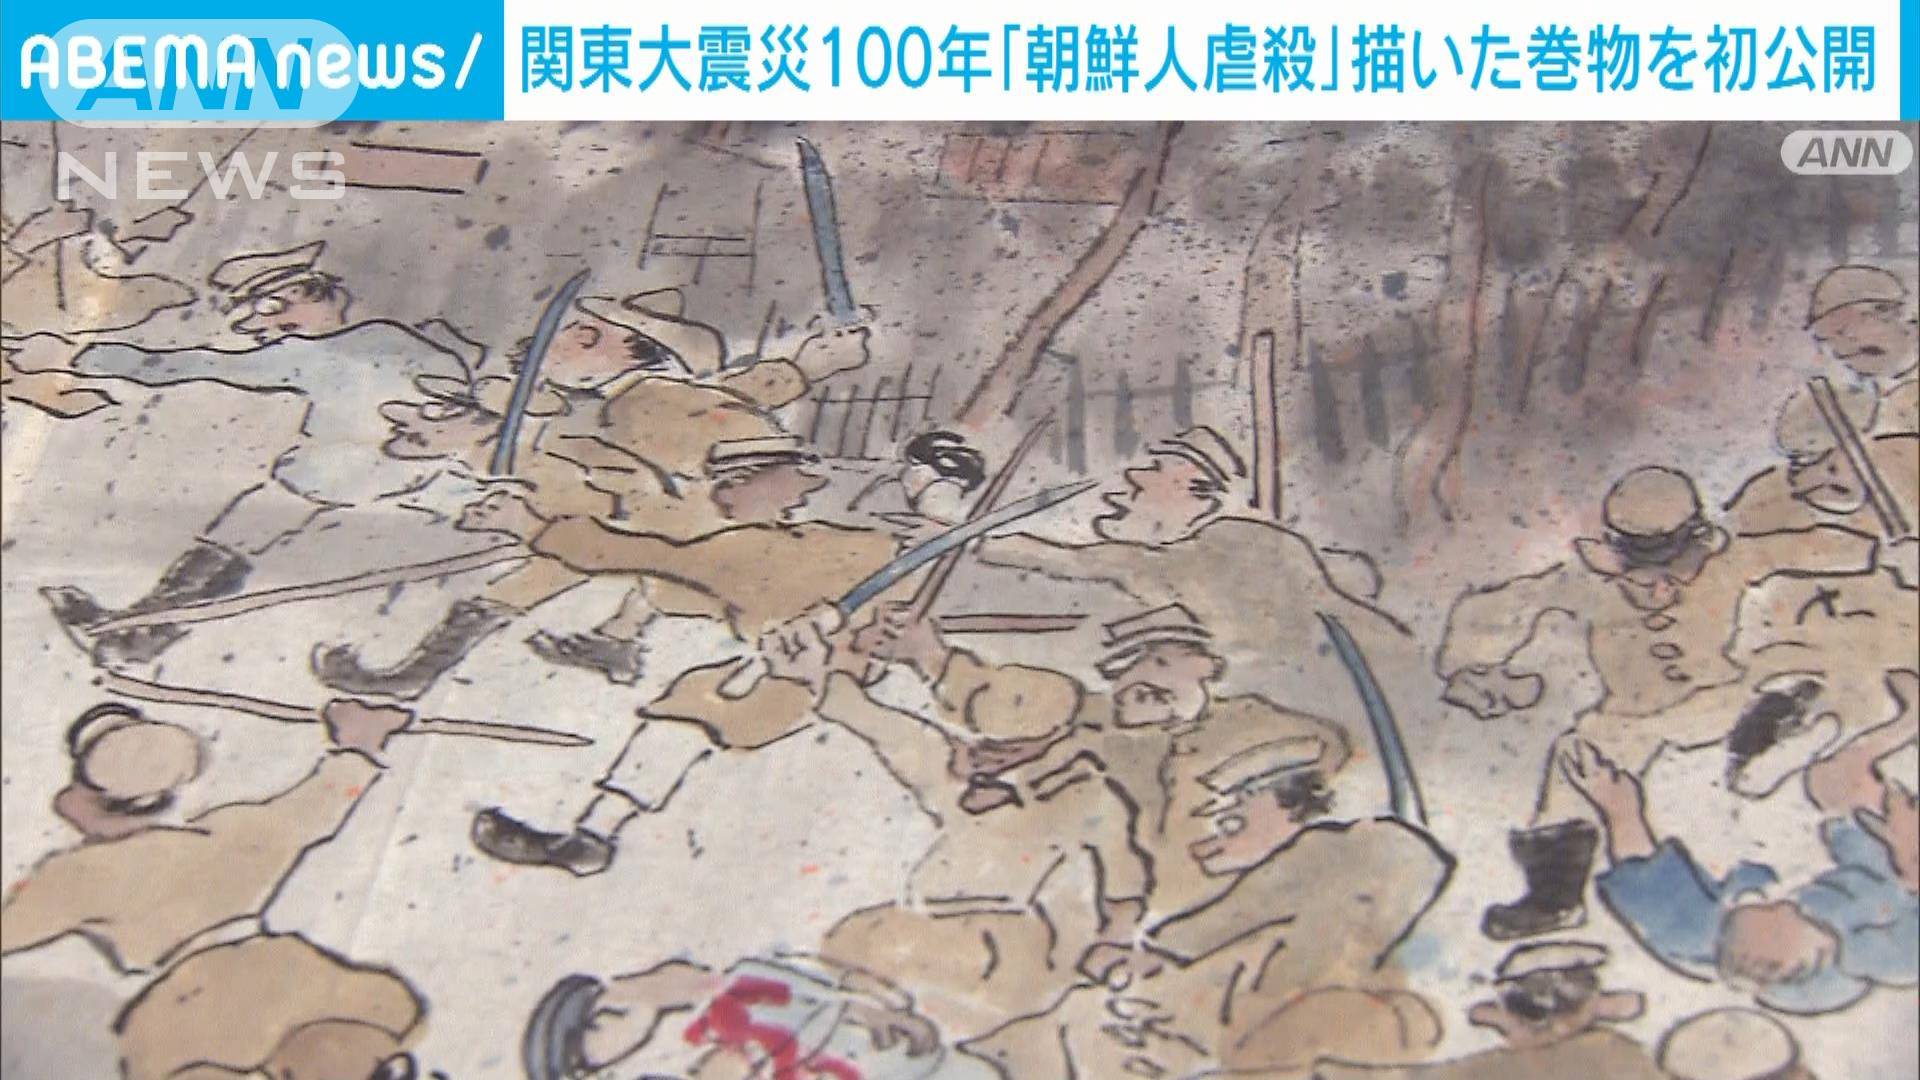 関東大震災100年 「朝鮮人虐殺」描いた巻物を初公開